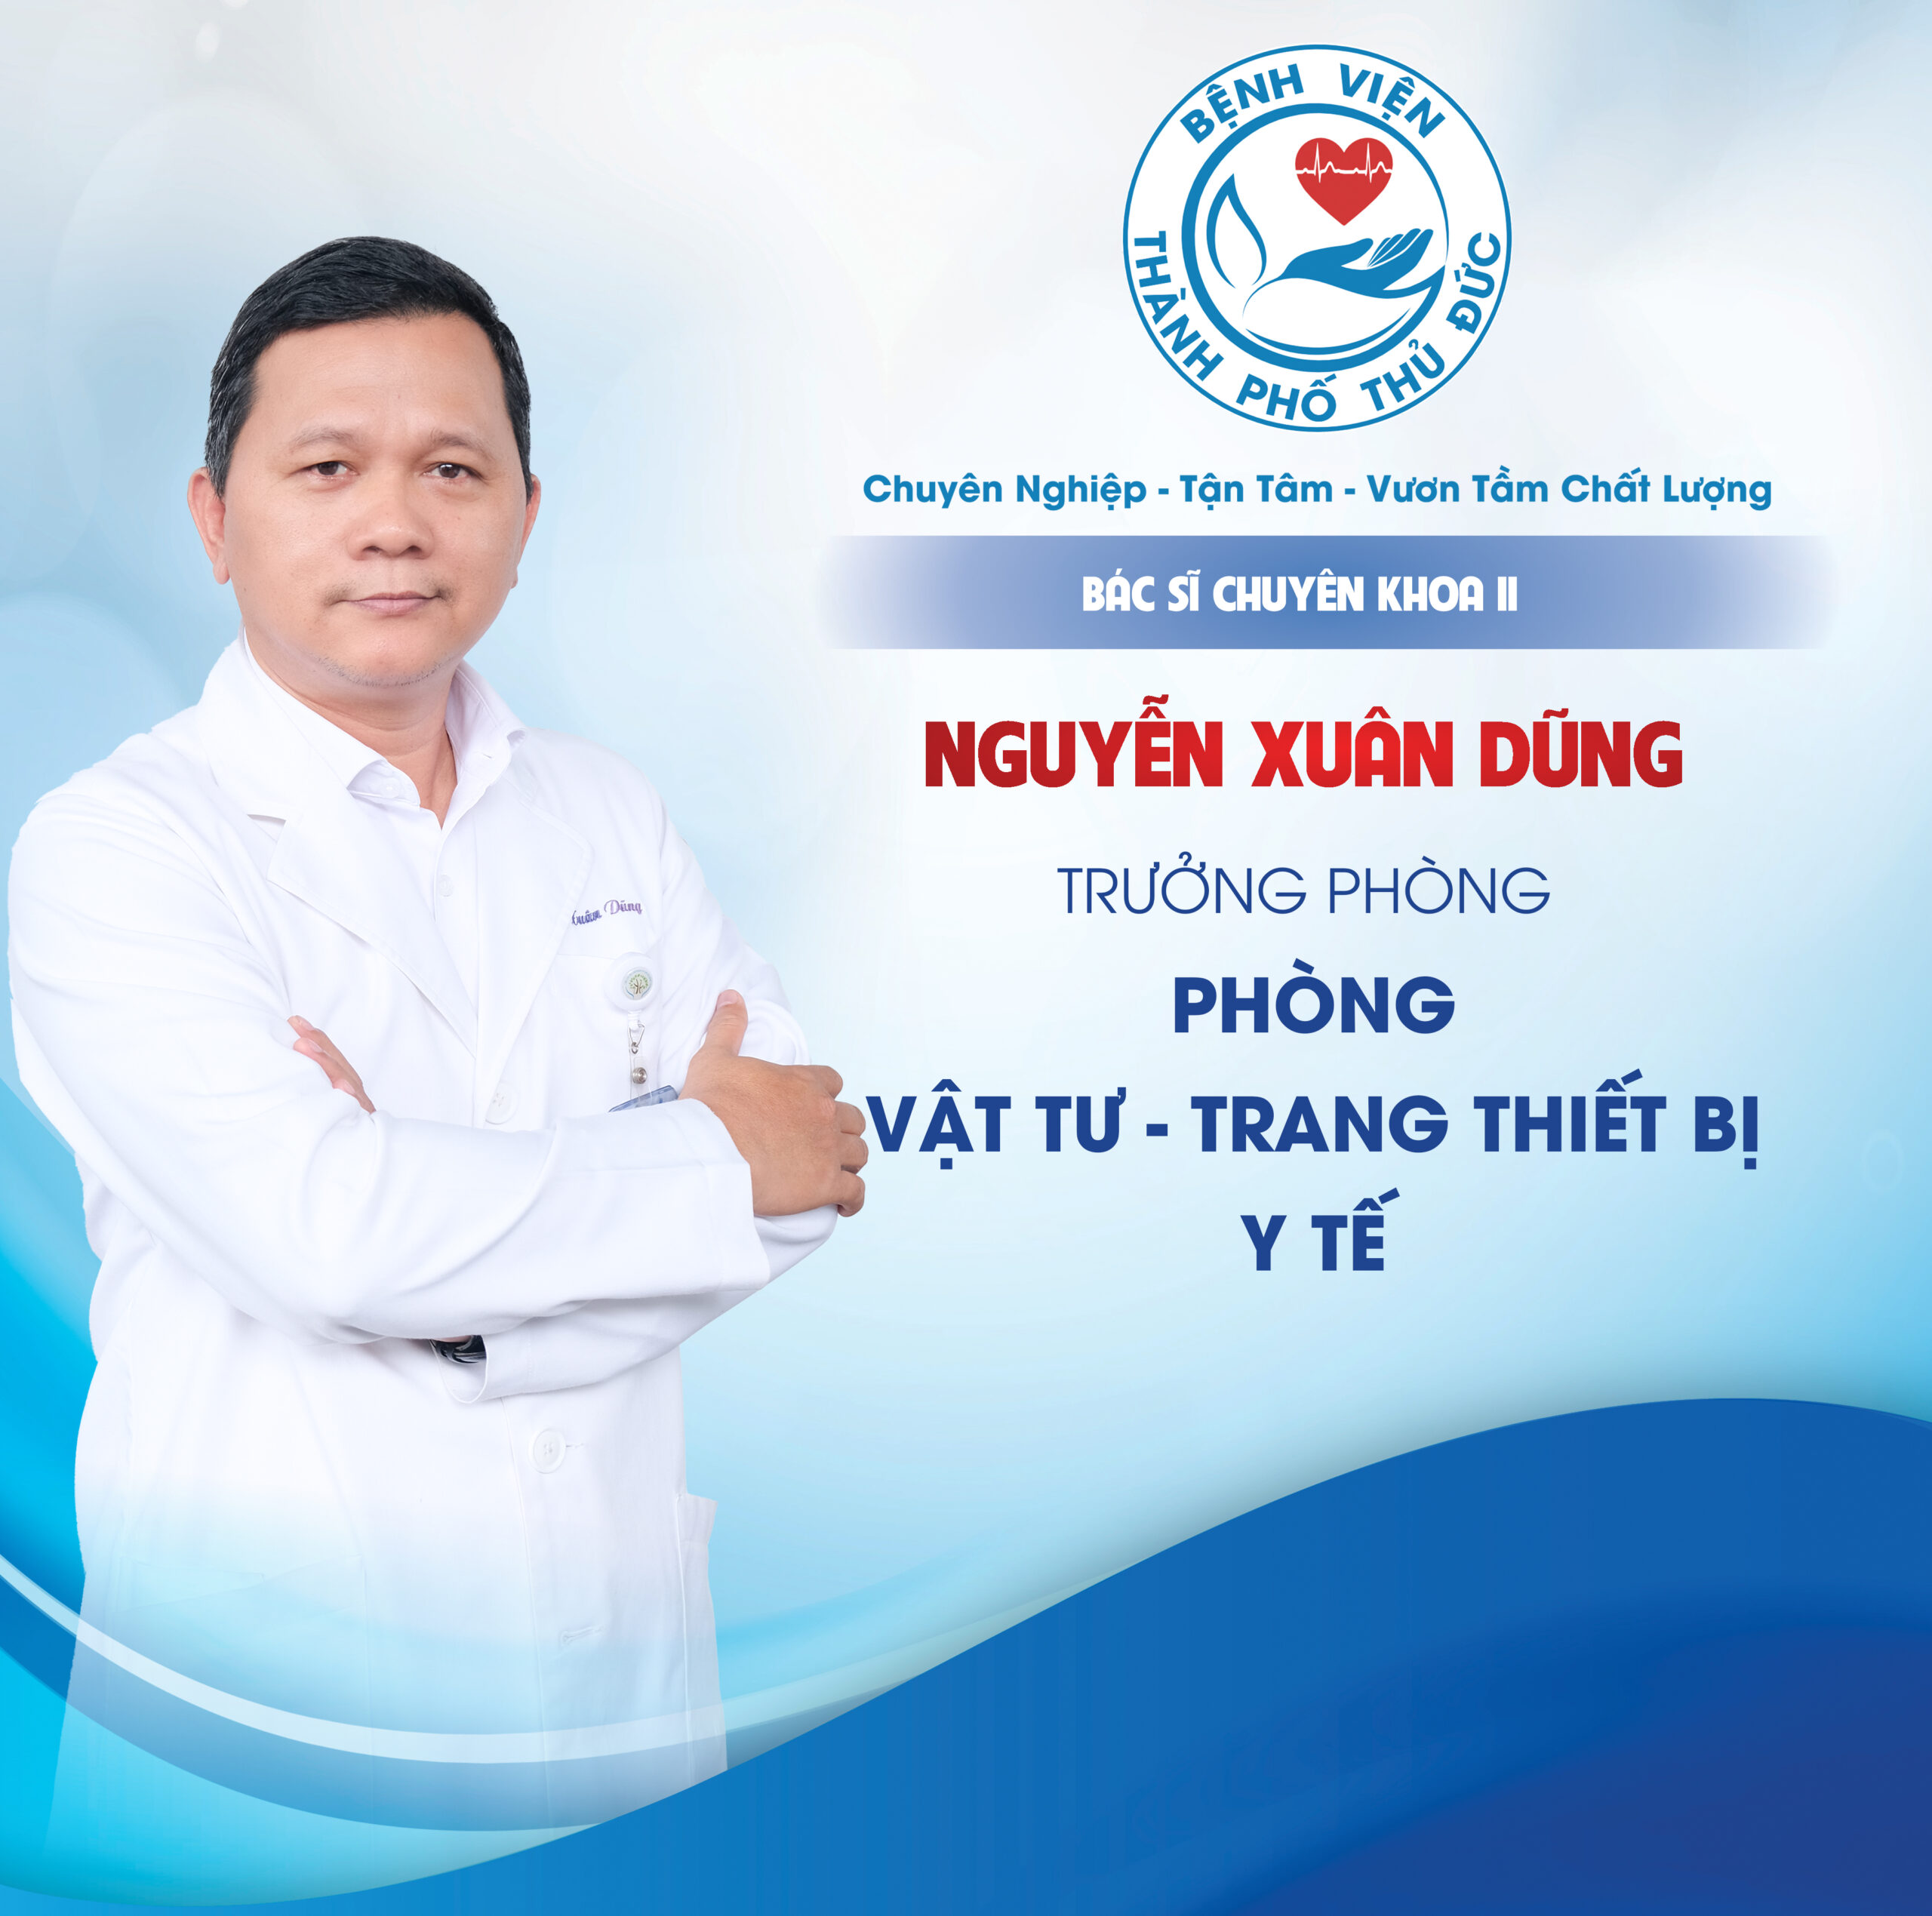 BSCKII. Nguyễn Xuân Dũng - Trưởng phòng Vật tư - Trang thiết bị Y tế